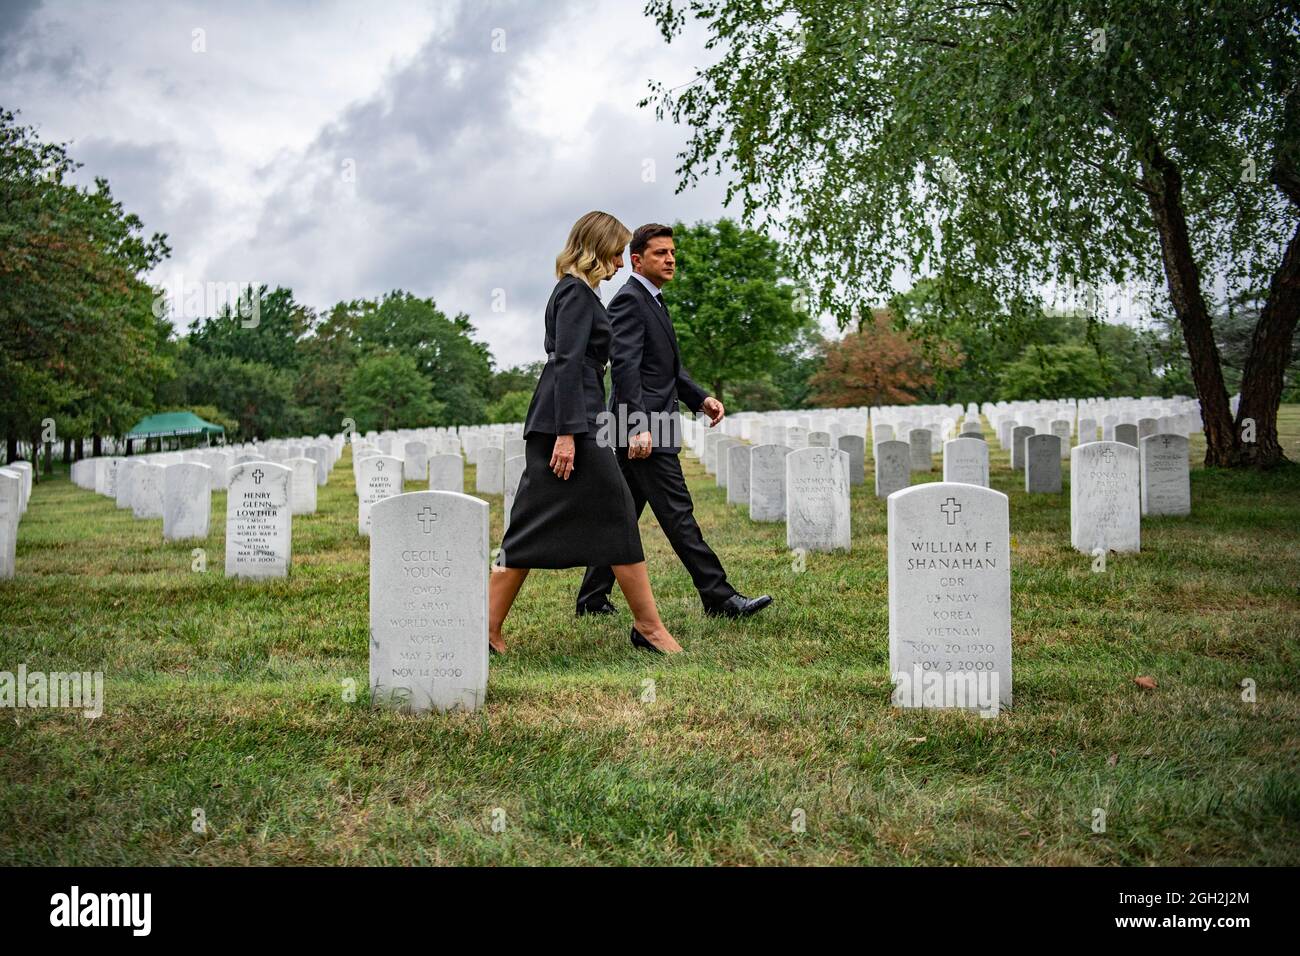 Ucraina prima Lady Olena Zelenska, a sinistra, e presidente ucraino Volodymyr Zelenskyy, passeggiata attraverso la Sezione 65 del cimitero nazionale di Arlington 1 settembre 2021 ad Arlington, Virginia. Zelenskyy ha visitato le tombe di diversi membri del servizio polacco americano. Foto Stock